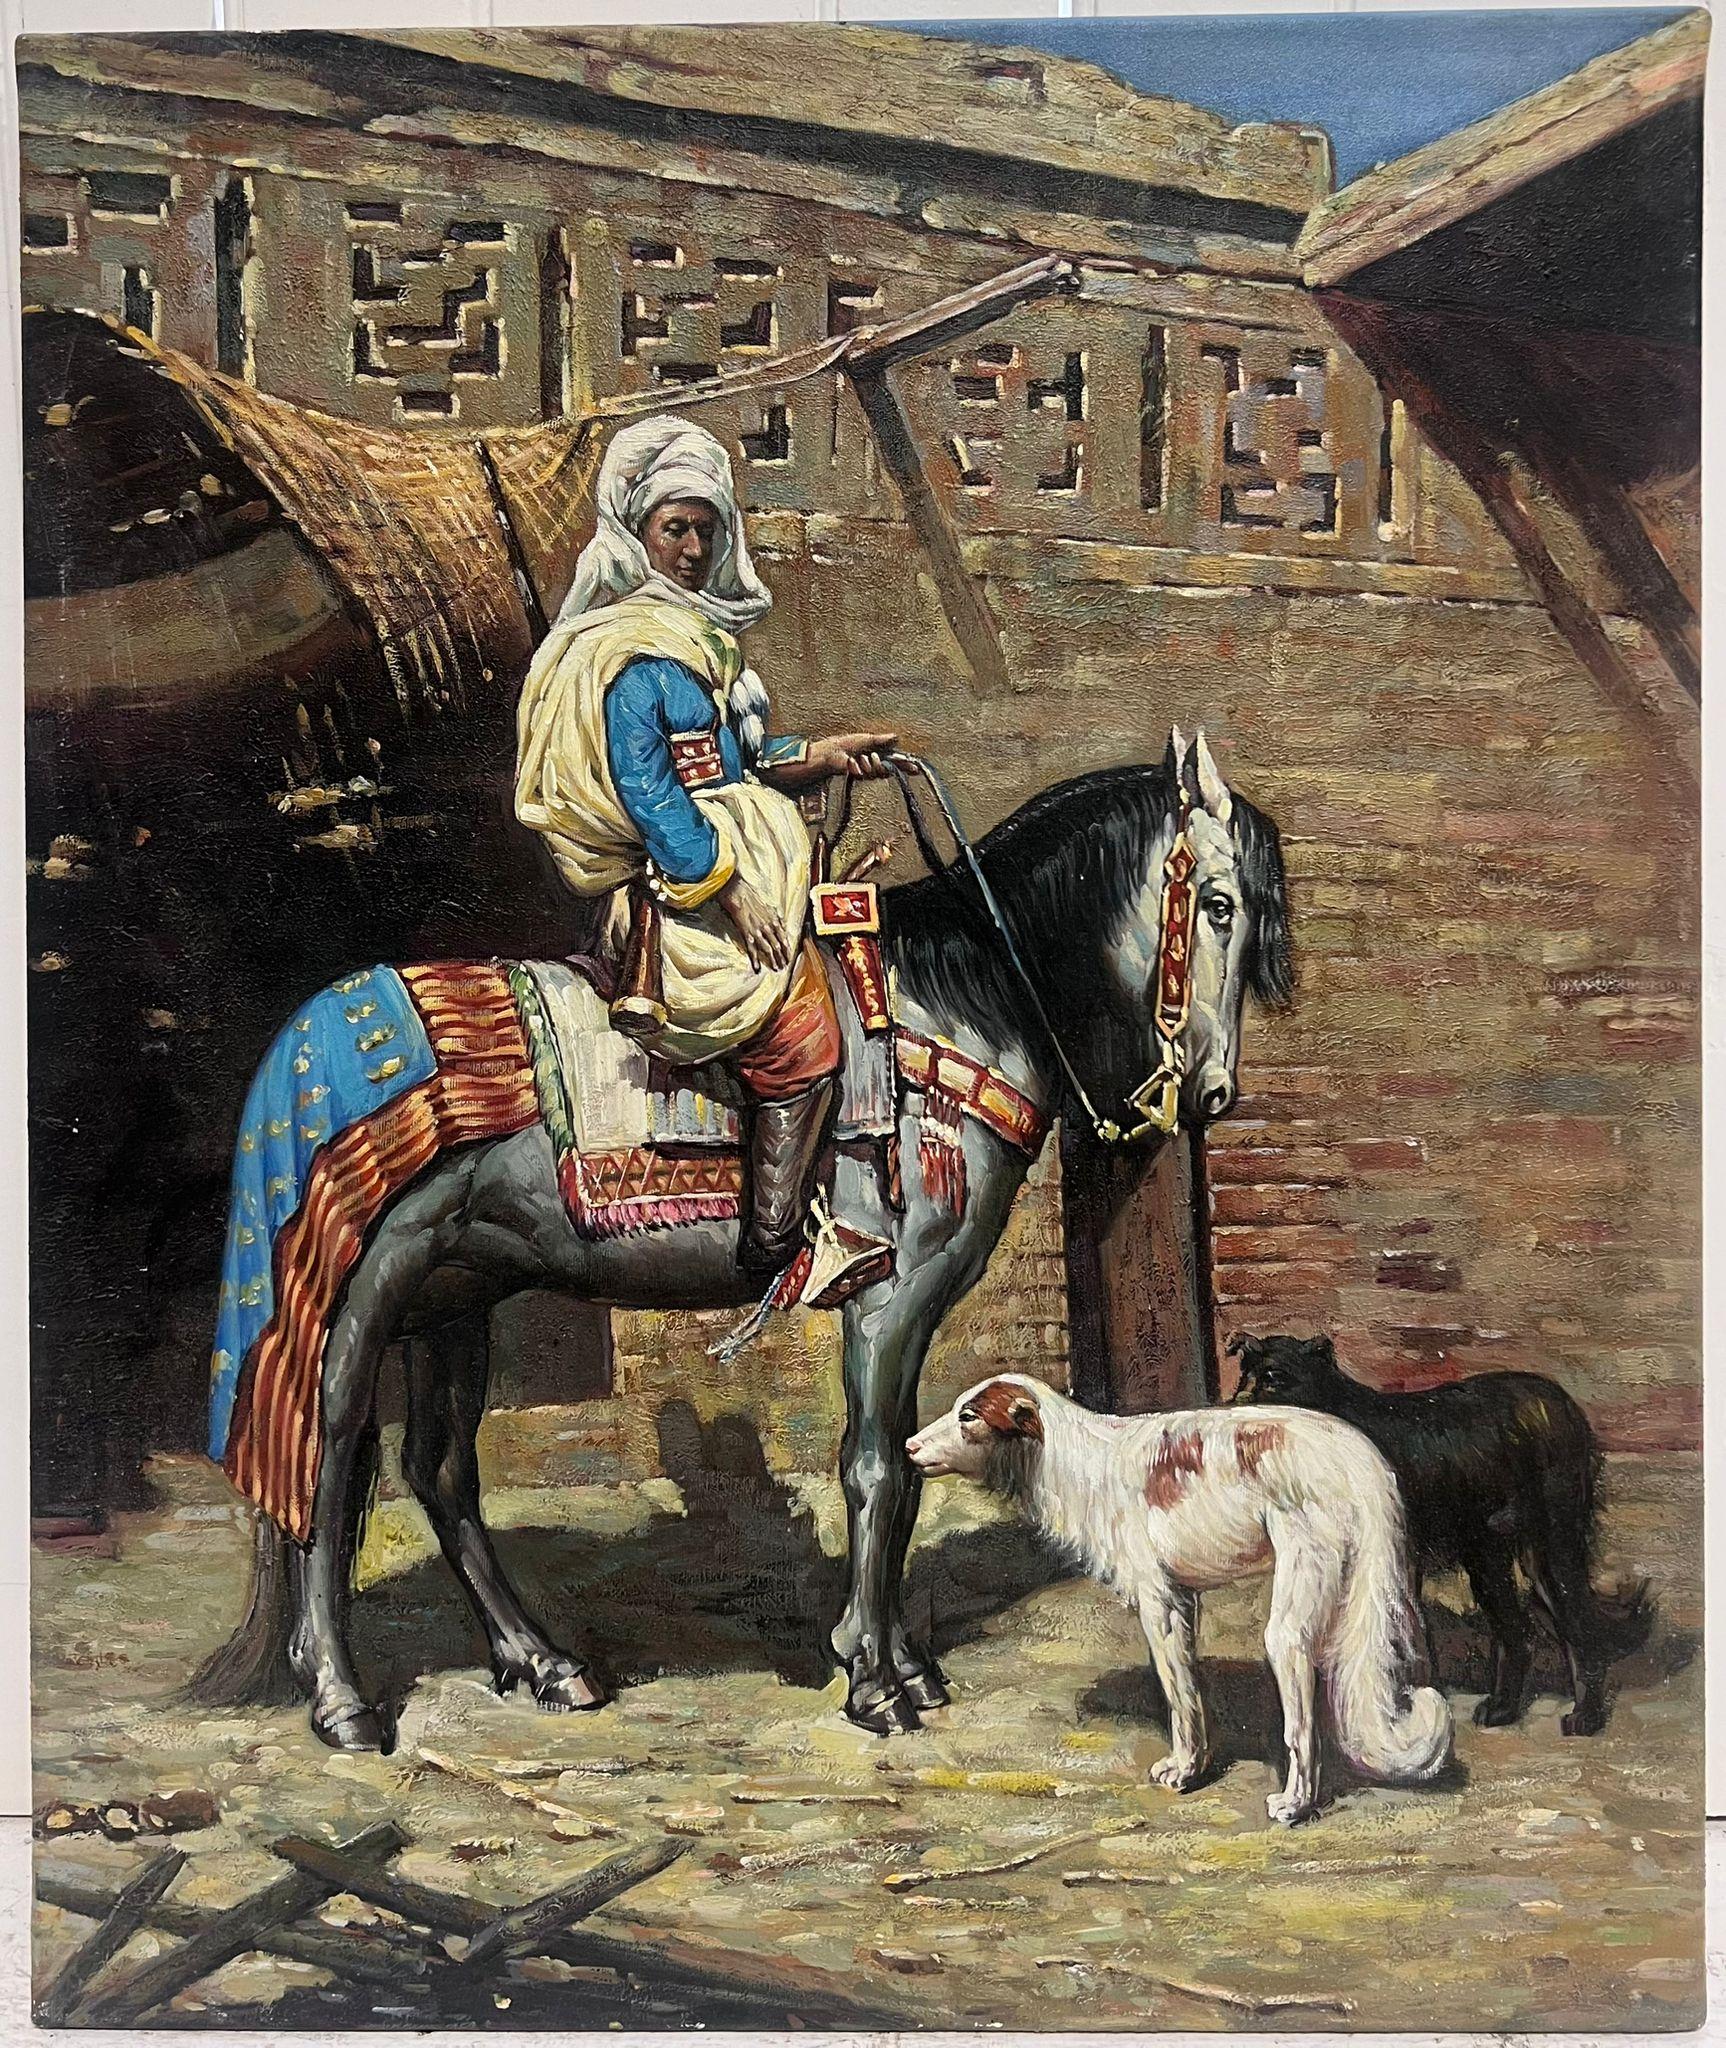 Nordafrikanische orientalische Szene, Mann zu Pferd mit Hunden, außerhalb des Stadtgebäudes – Painting von European Artist